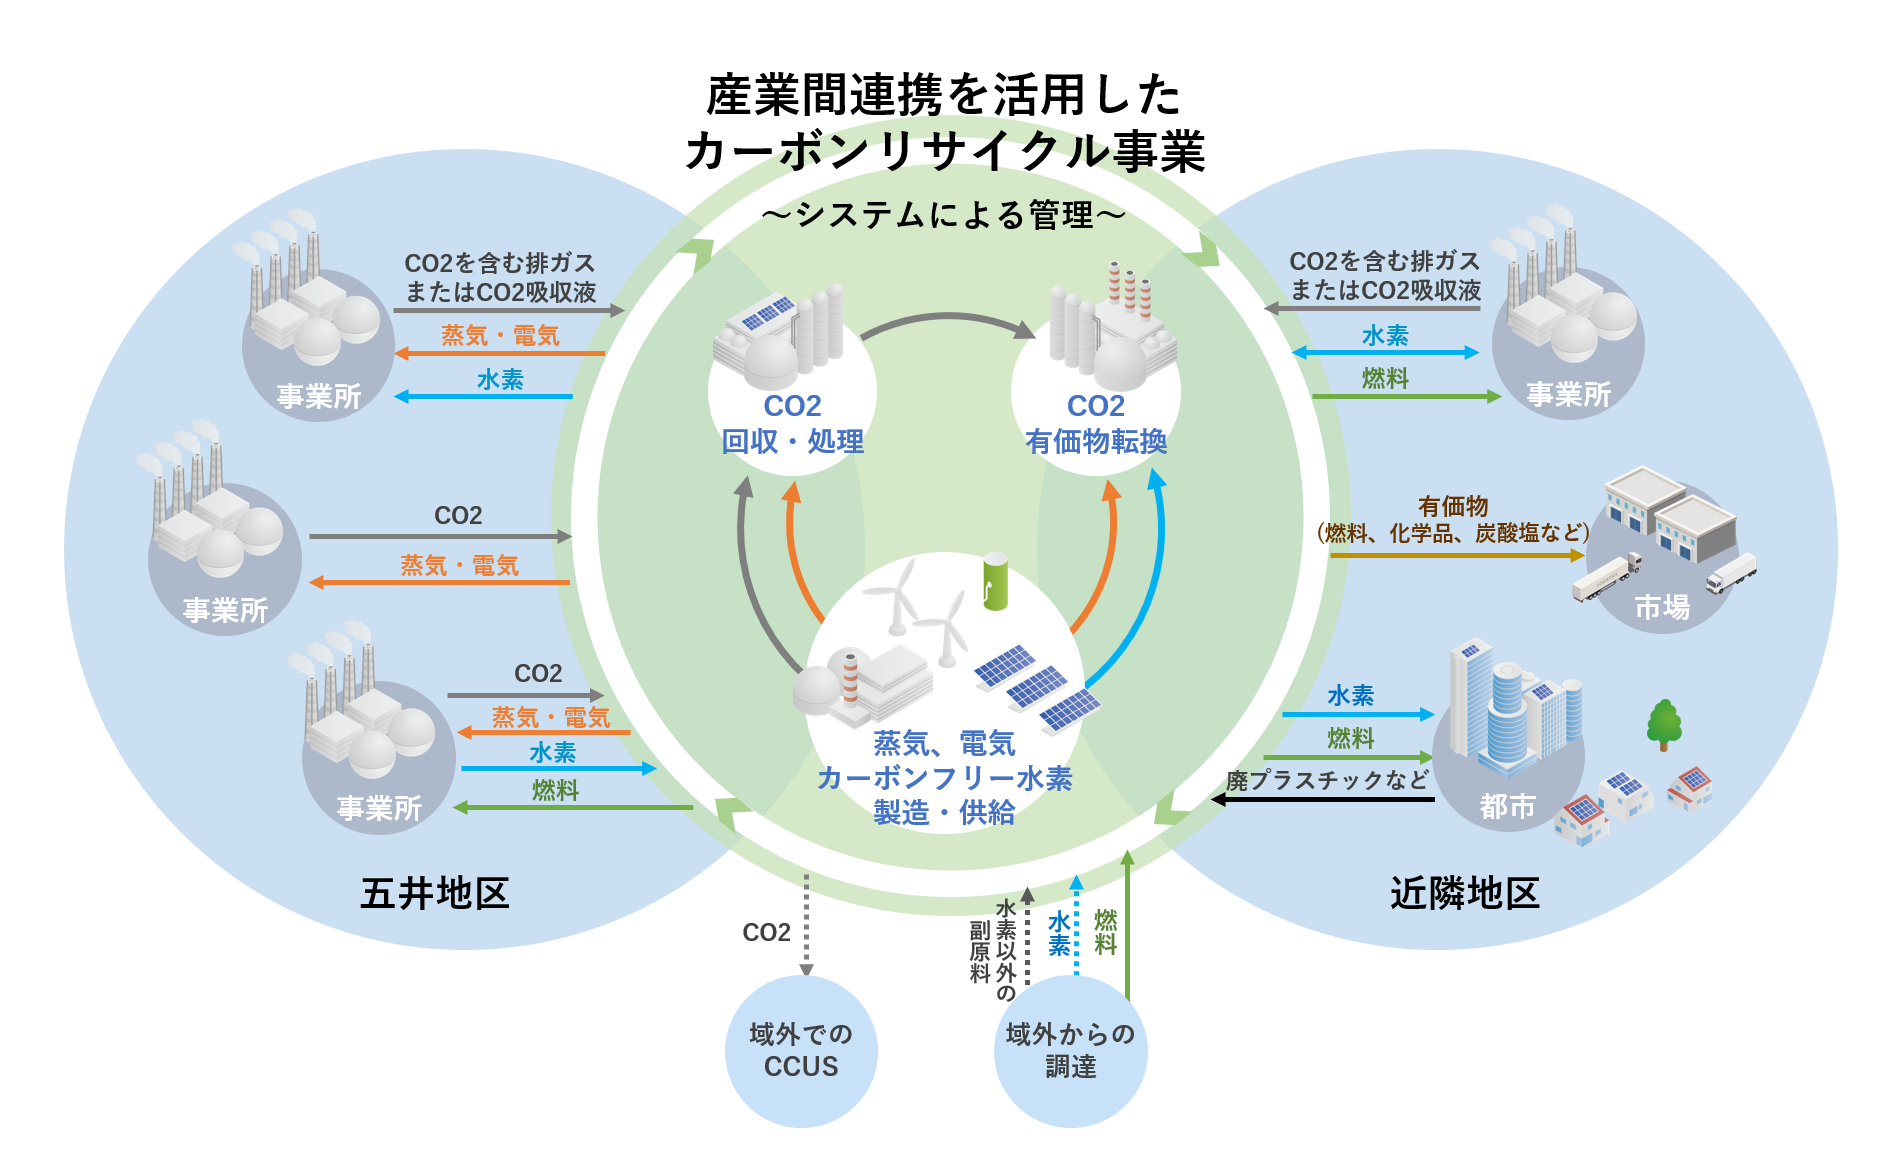 横河電機 コンビナートのカーボンニュートラル調査 千葉・五井地区で開始